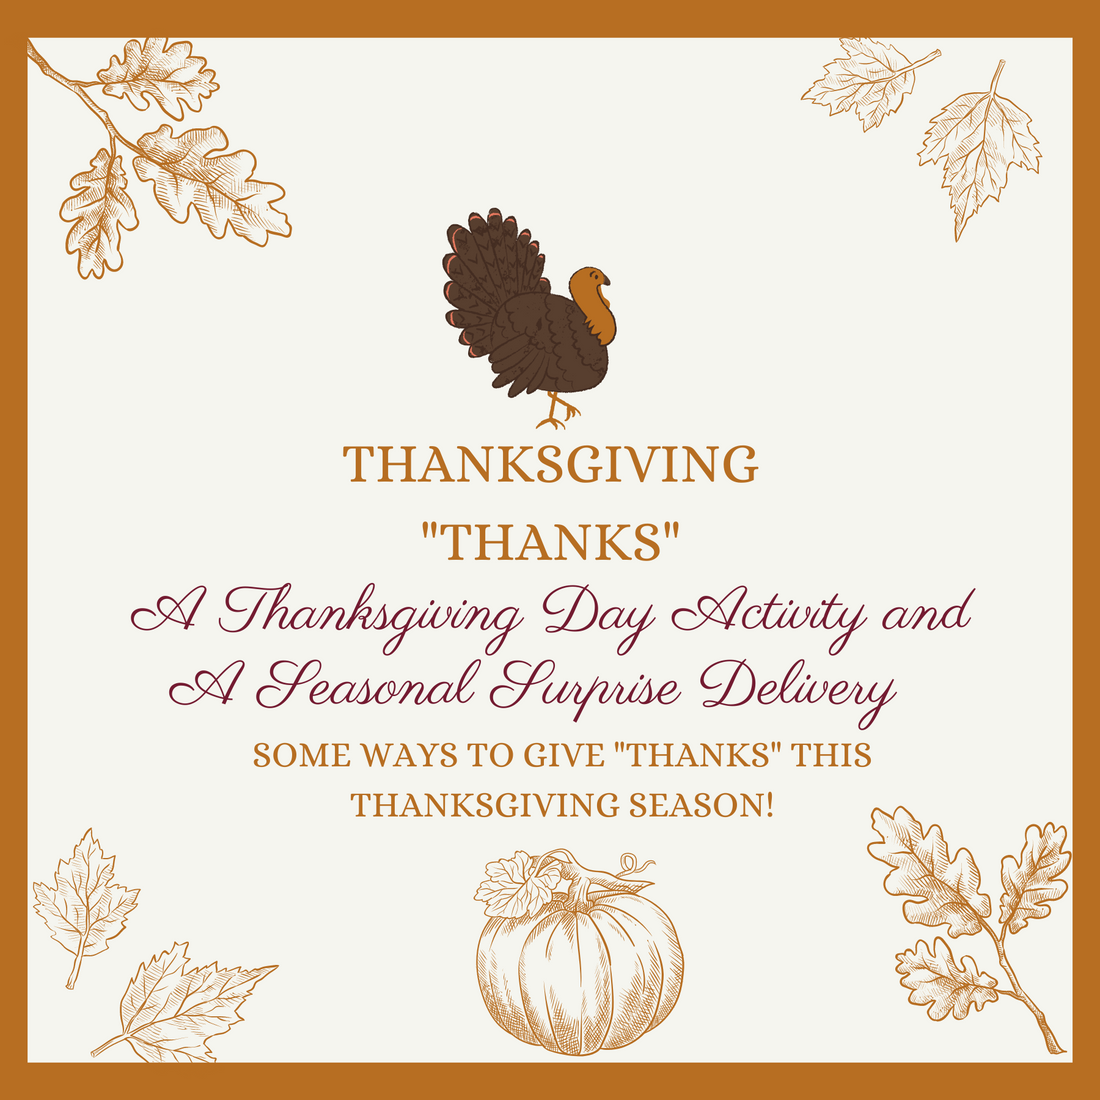 Seasonal Surprise - Thanksgiving "Thanks"